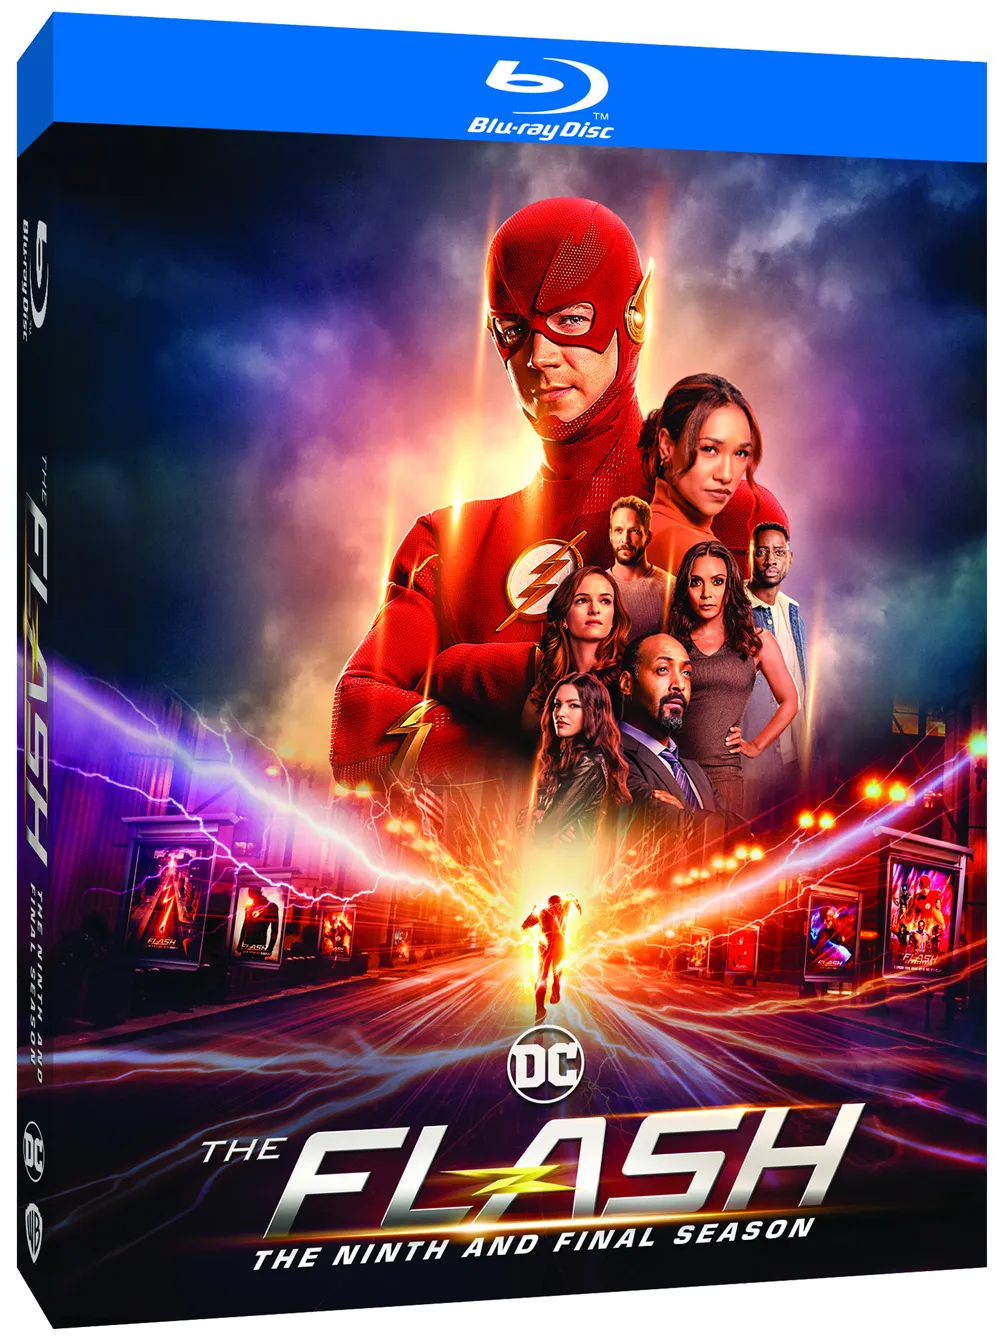 the flash season 9 blu-ray release date